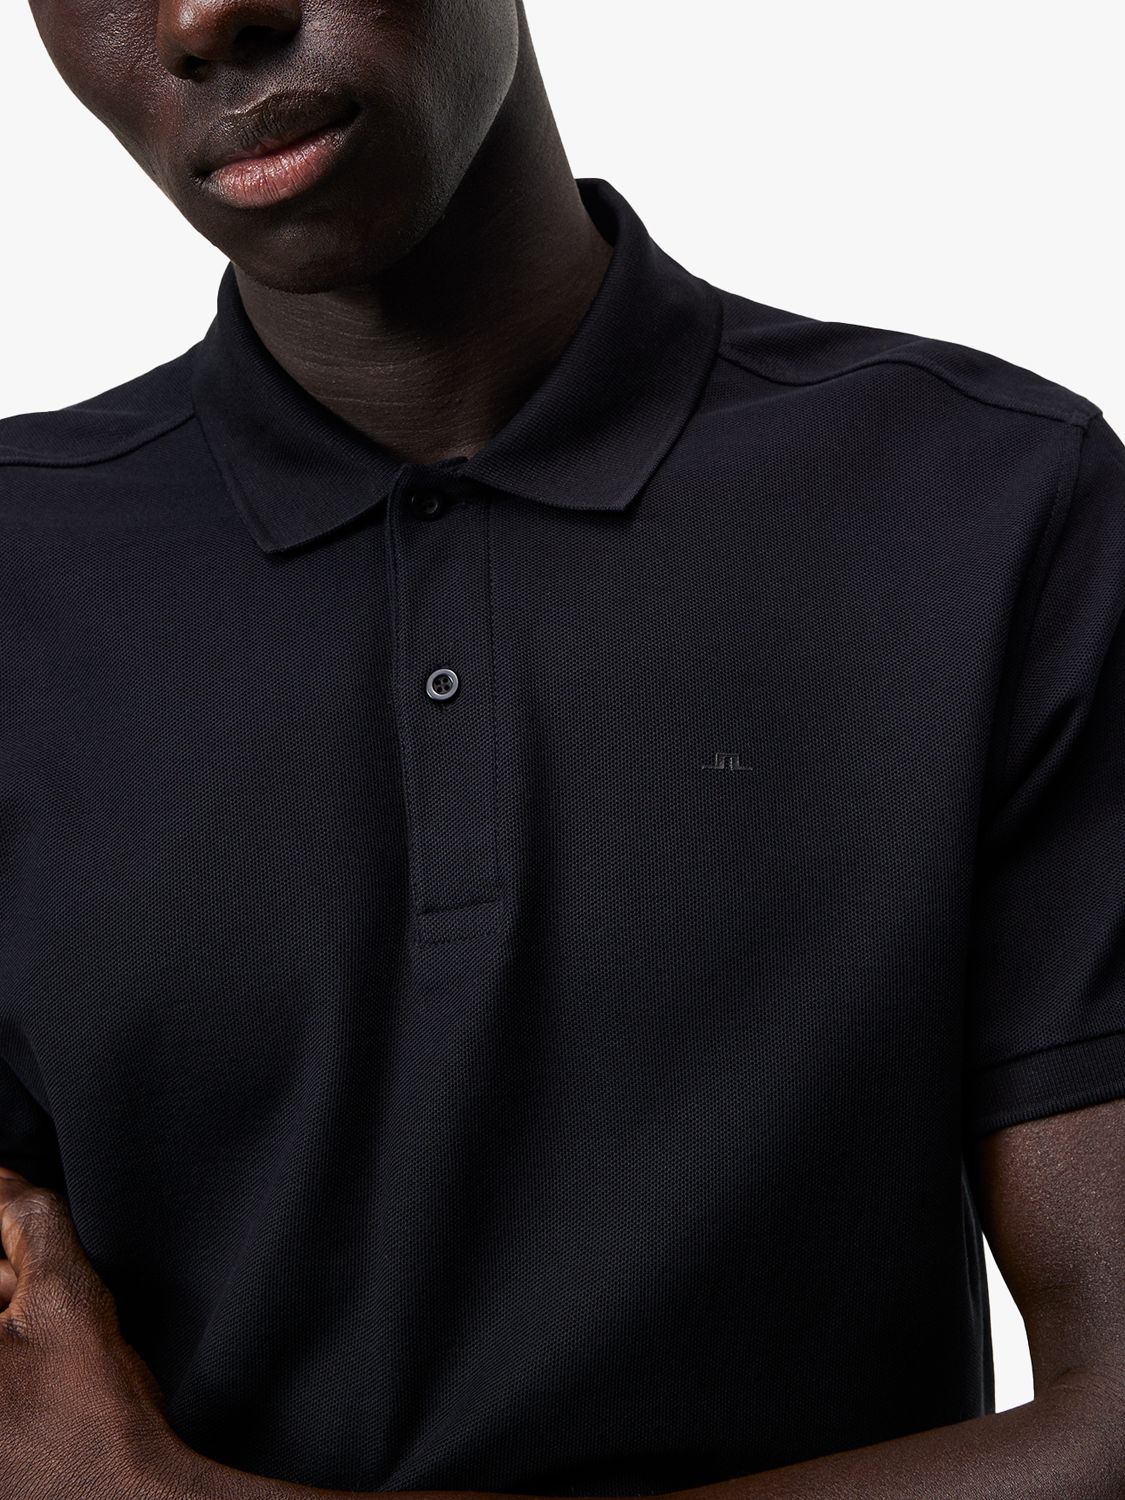 J.Lindeberg Pique Polo Shirt, Black, S